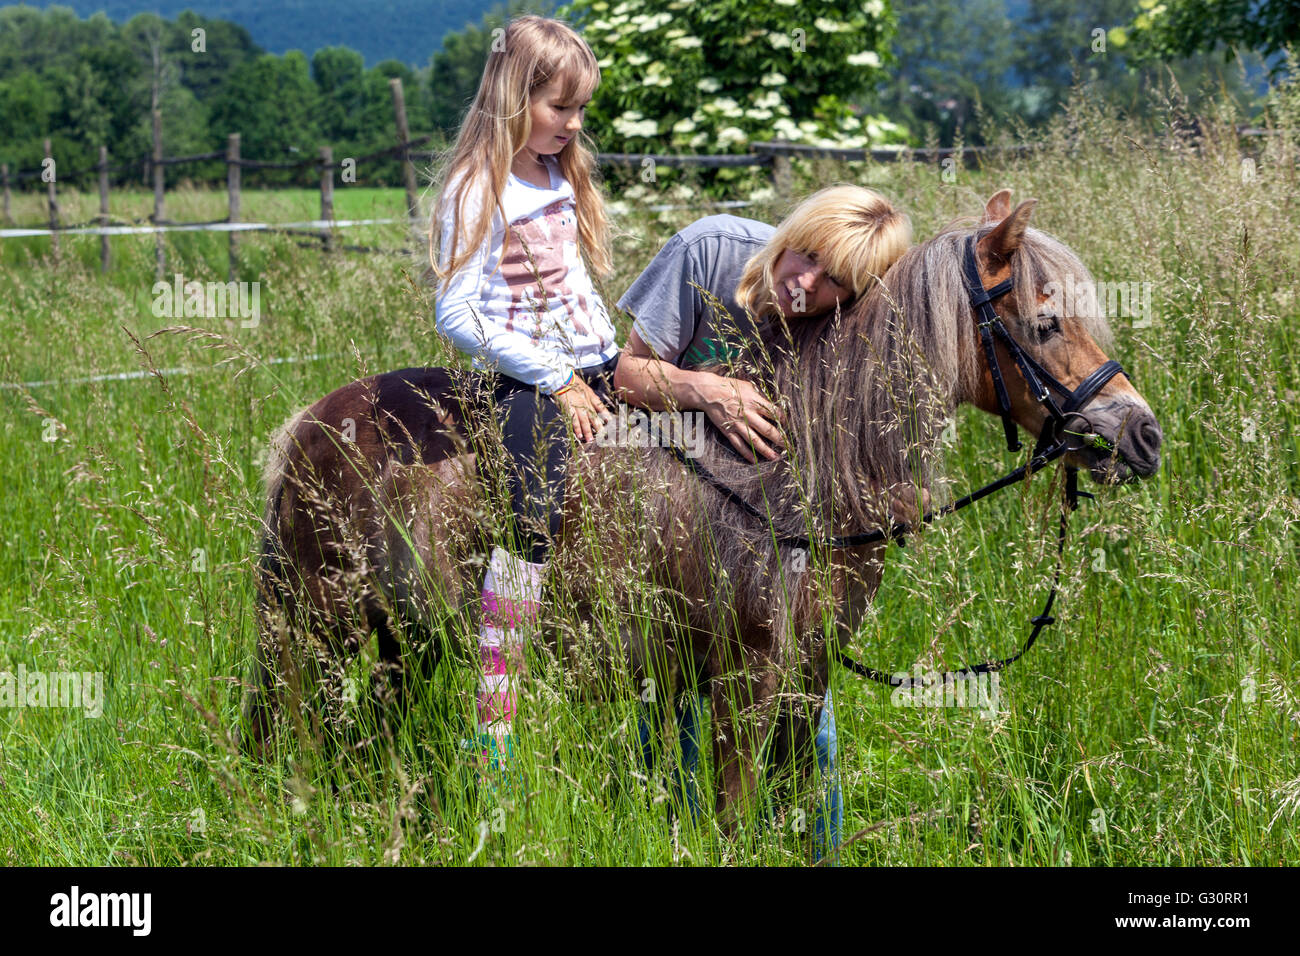 Petite fille équitation poney, fille cheval et femme dans un pré herbacé, enfant sur poney Banque D'Images